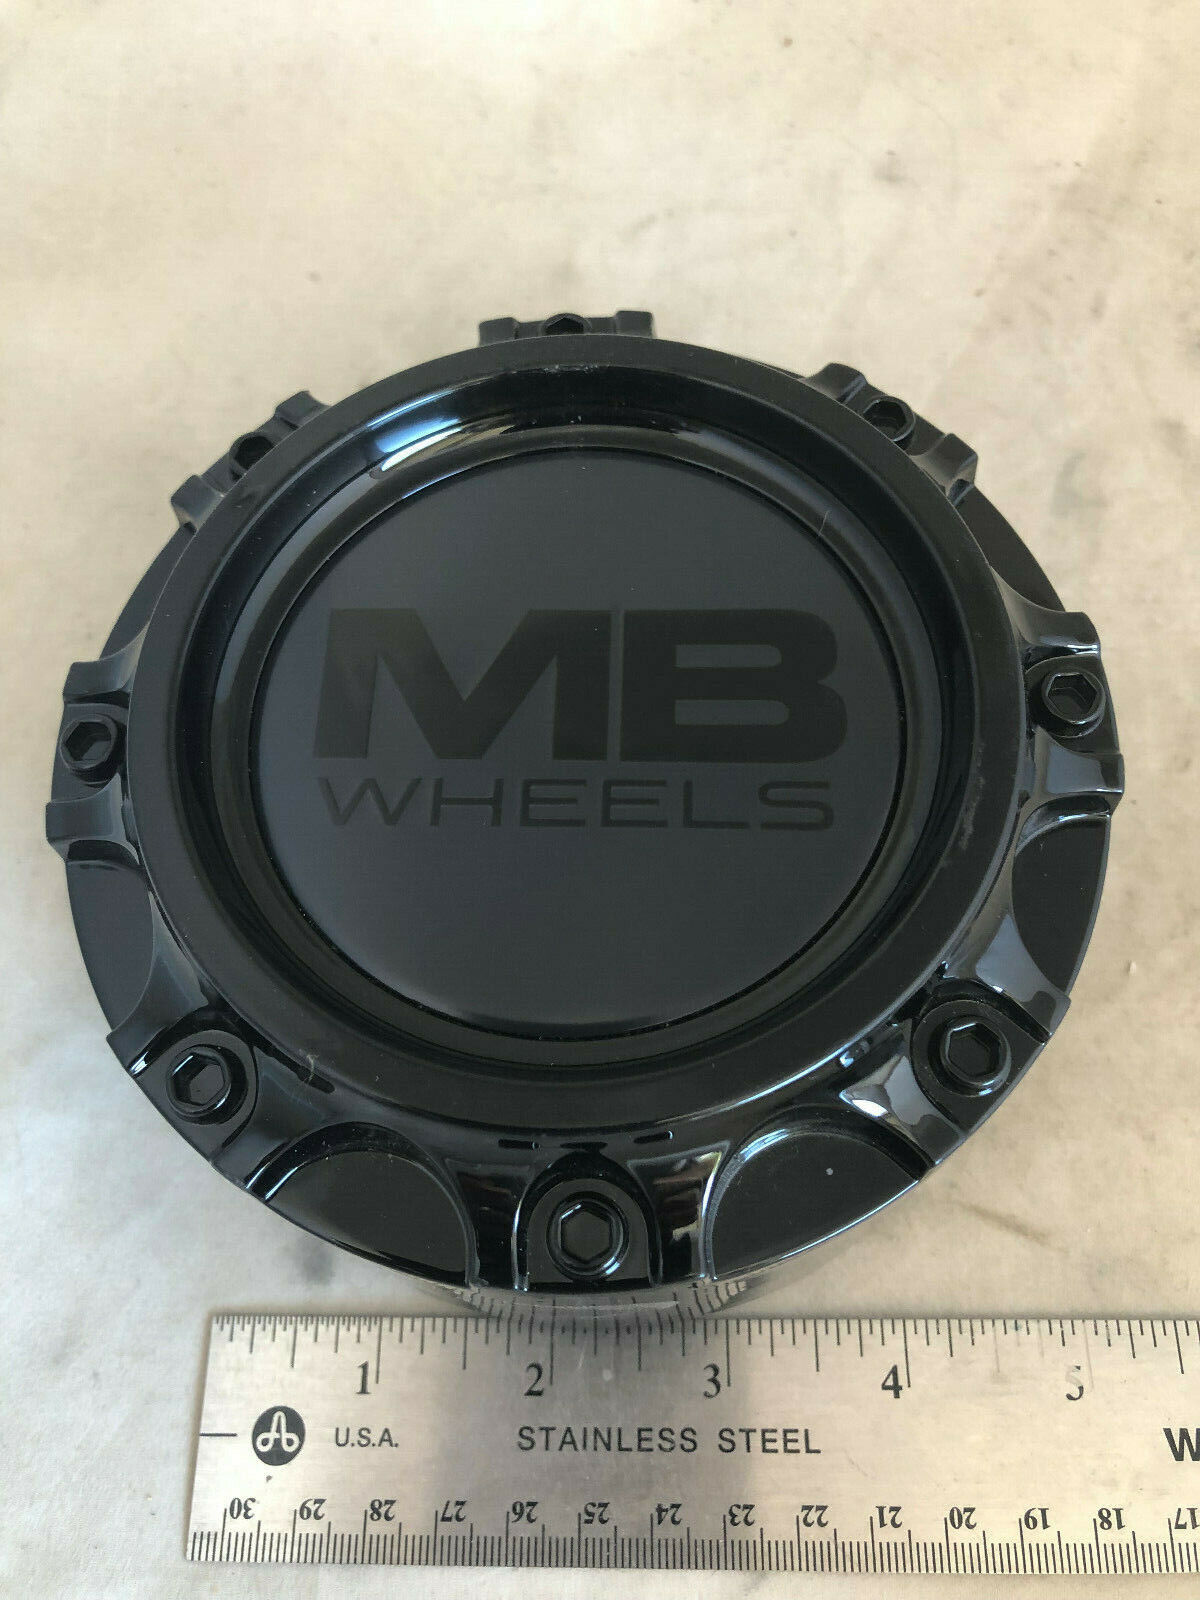 NEW MB Motoring Wheels Gloss Black Wheel Rim Hub Dust Cover Cap CAP5389 5389-B